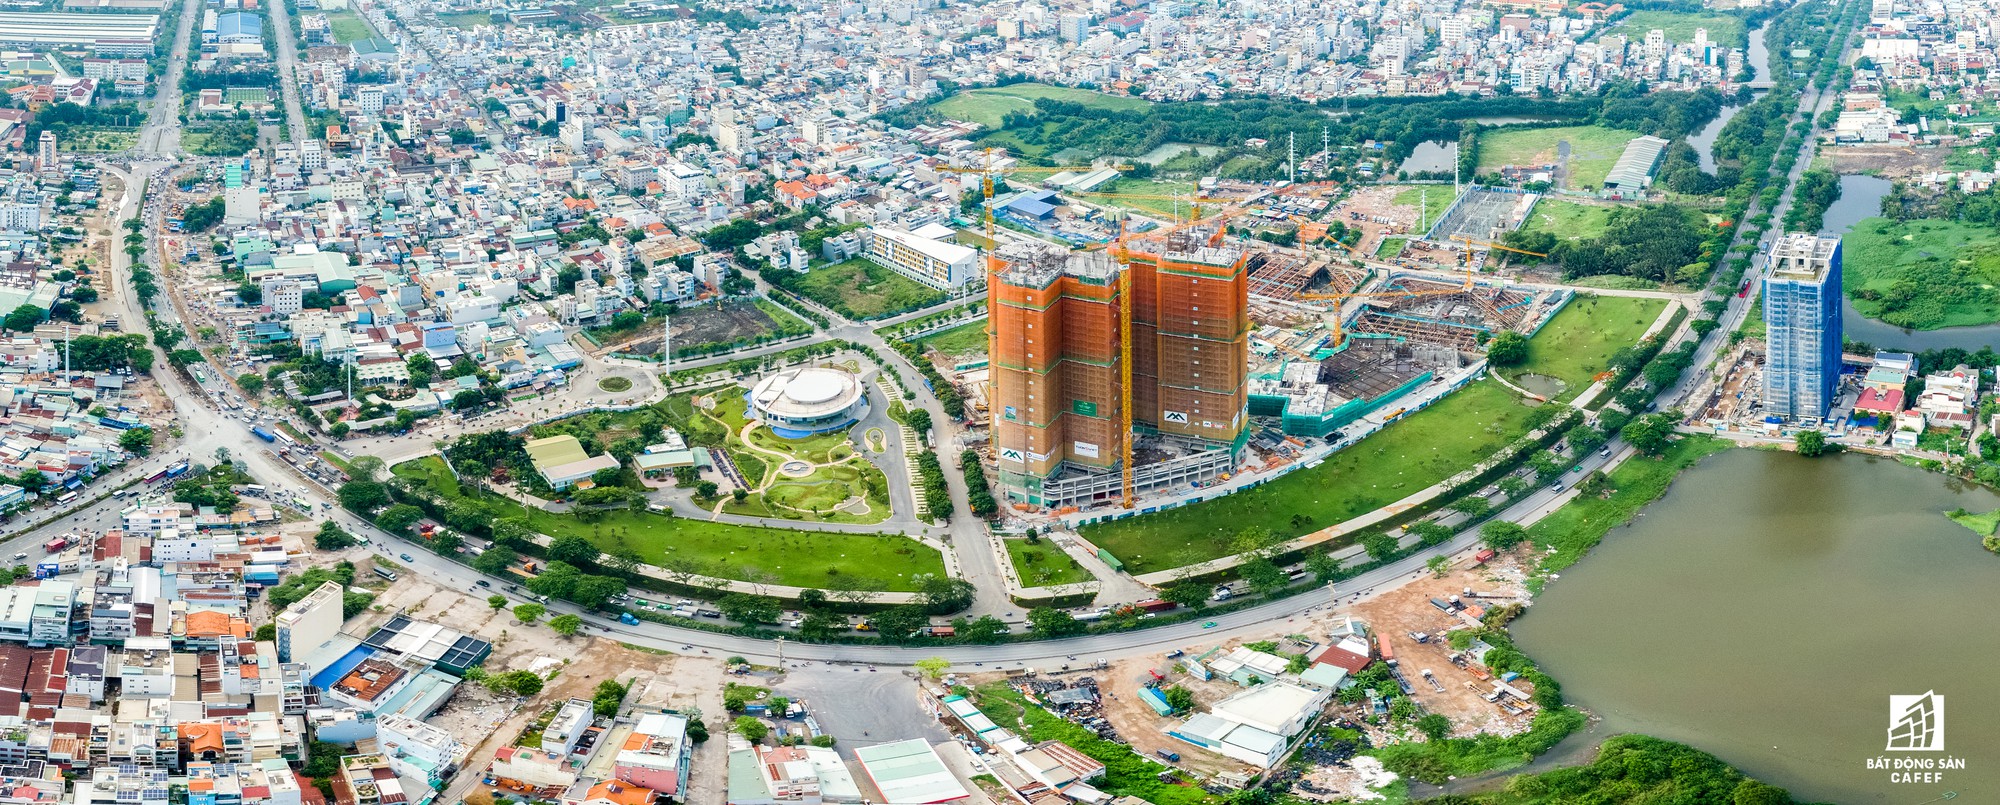 Toàn cảnh đại lộ tỷ đô đã tạo nên một thị trường bất động sản rất riêng cho khu Nam Sài Gòn - Ảnh 3.